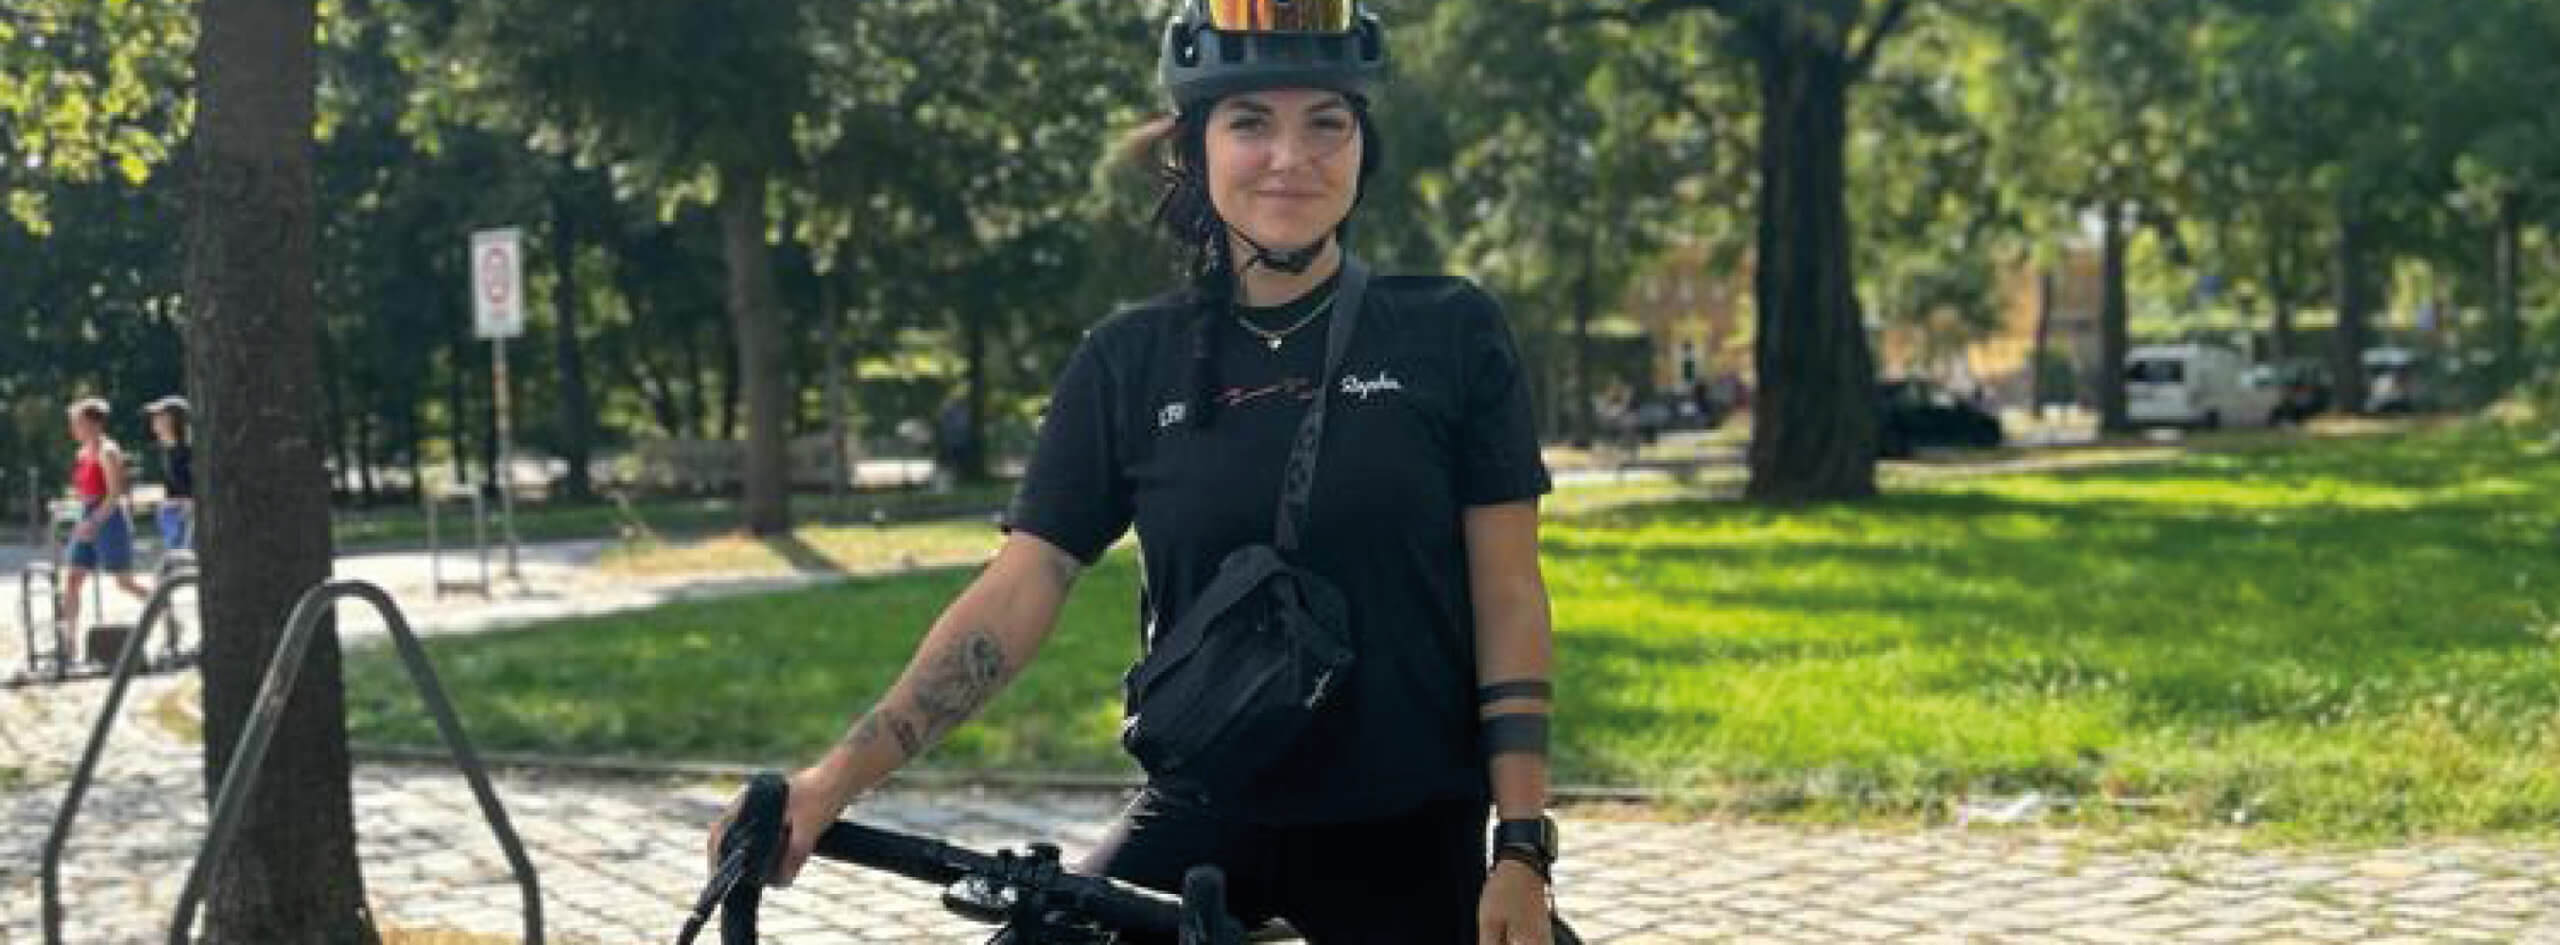 Eine sportliche Frau sitzt auf ihrem Cannondale-Bike in einem Park und lächelt in die Kamera. Es ist Natalie von den #LJBfemmes.